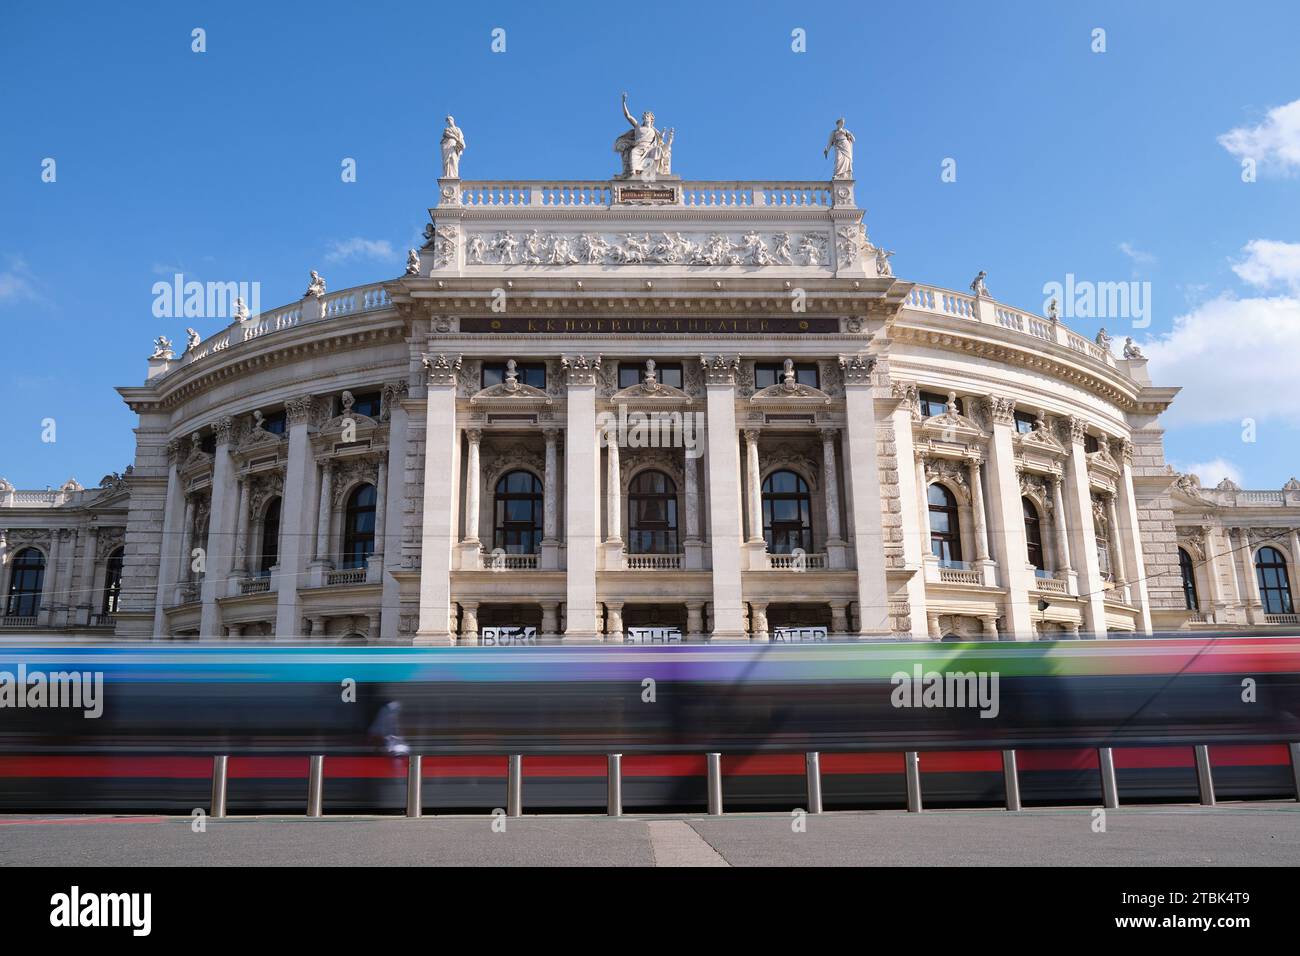 Burgtheater-Gebäudefassade, das Nationaltheater Österreichs in Wien, ein deutschsprachiges Theater, mit vorbeifahrender Straßenbahn. Wien, Österreich - 2. September Stockfoto